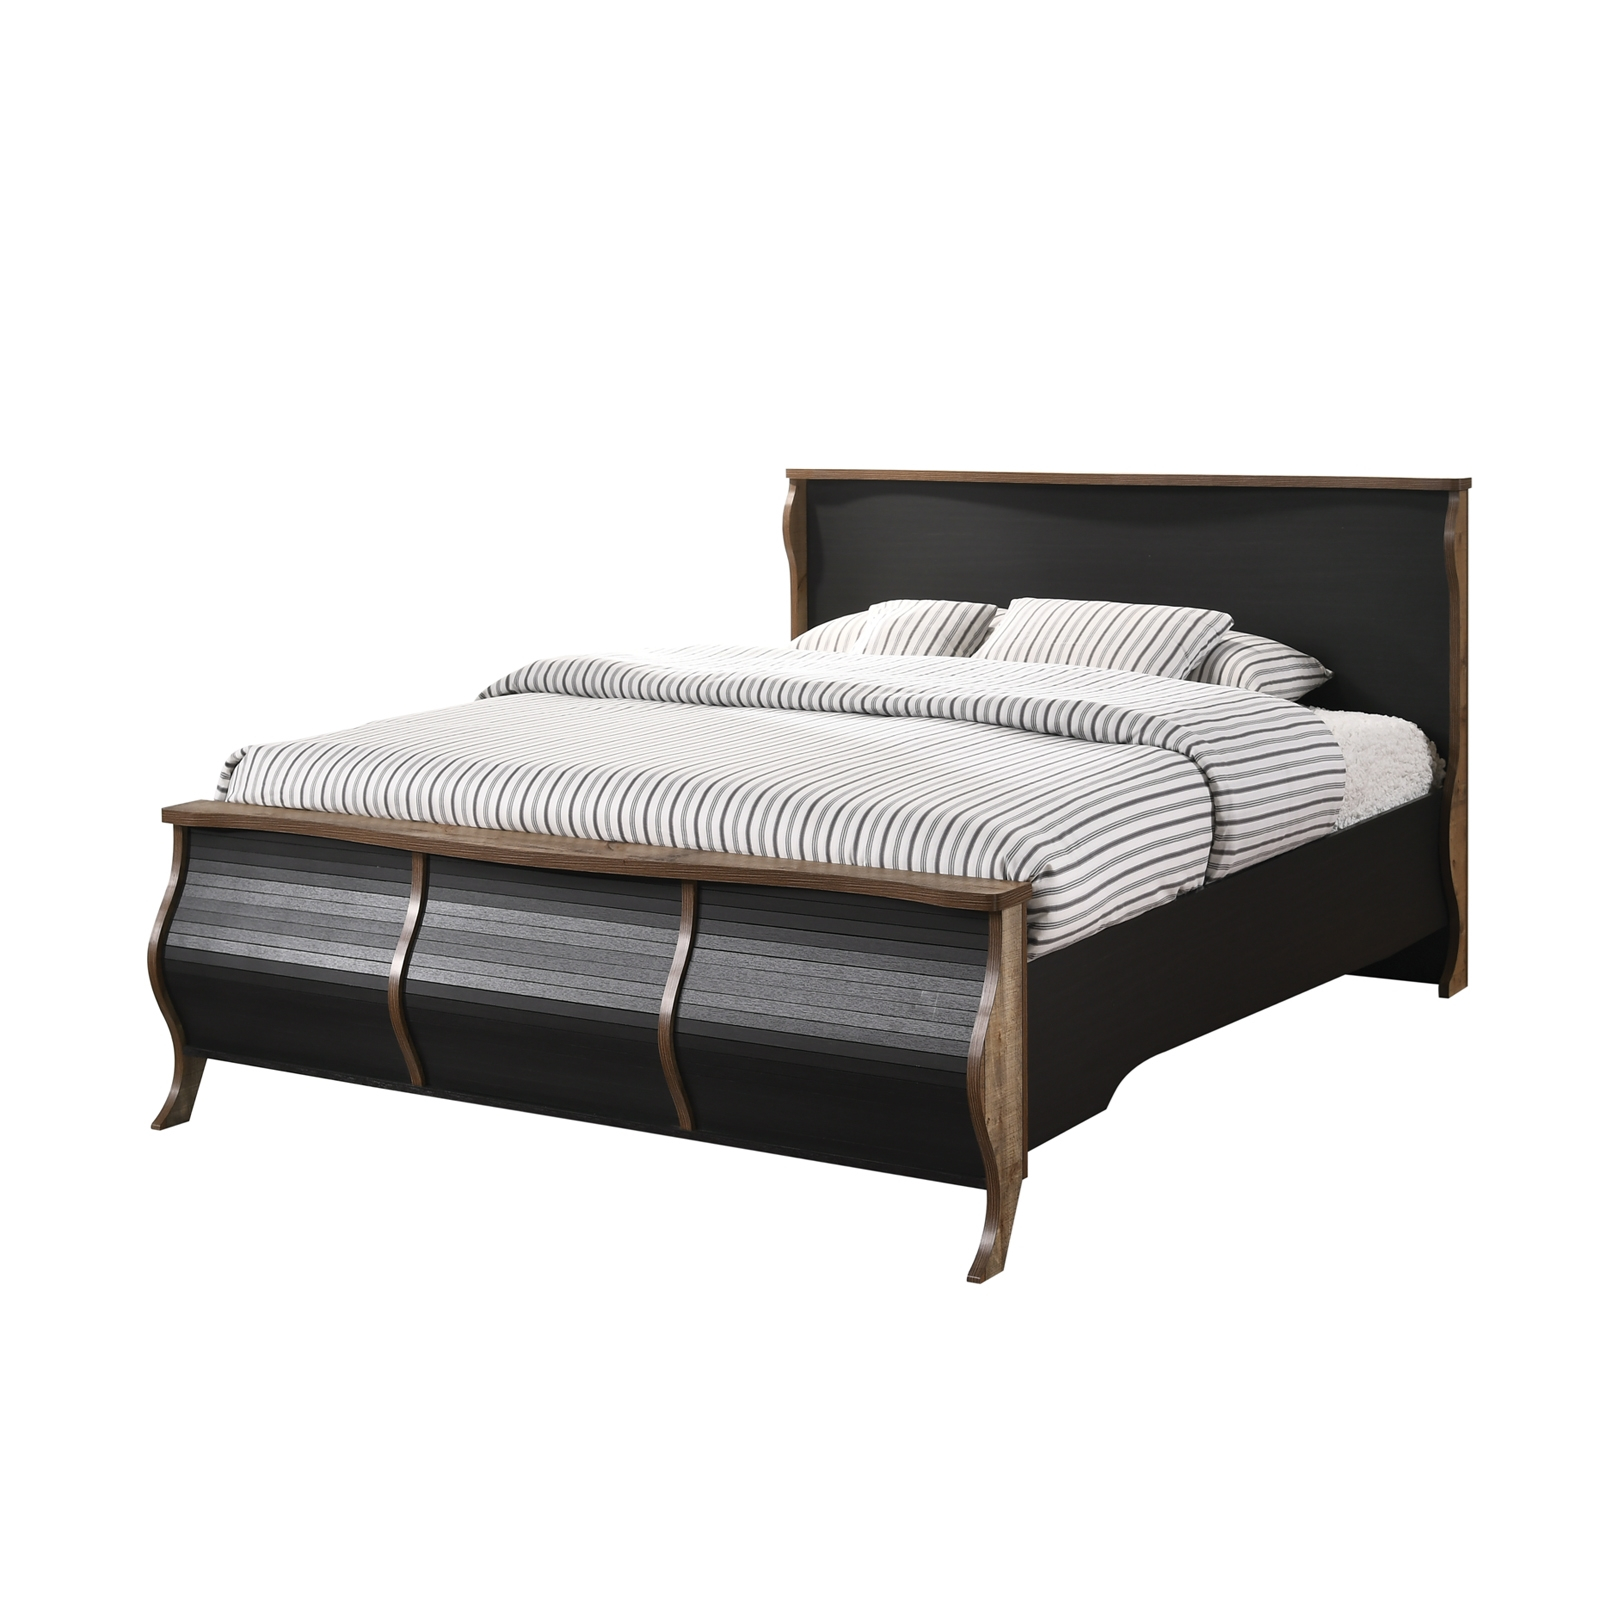 Κρεβάτι SCARLET 160×200 Antique Oak/Ebony Oak(Ραμποτέ) 170 x215x113(Στρώμα 160×200)